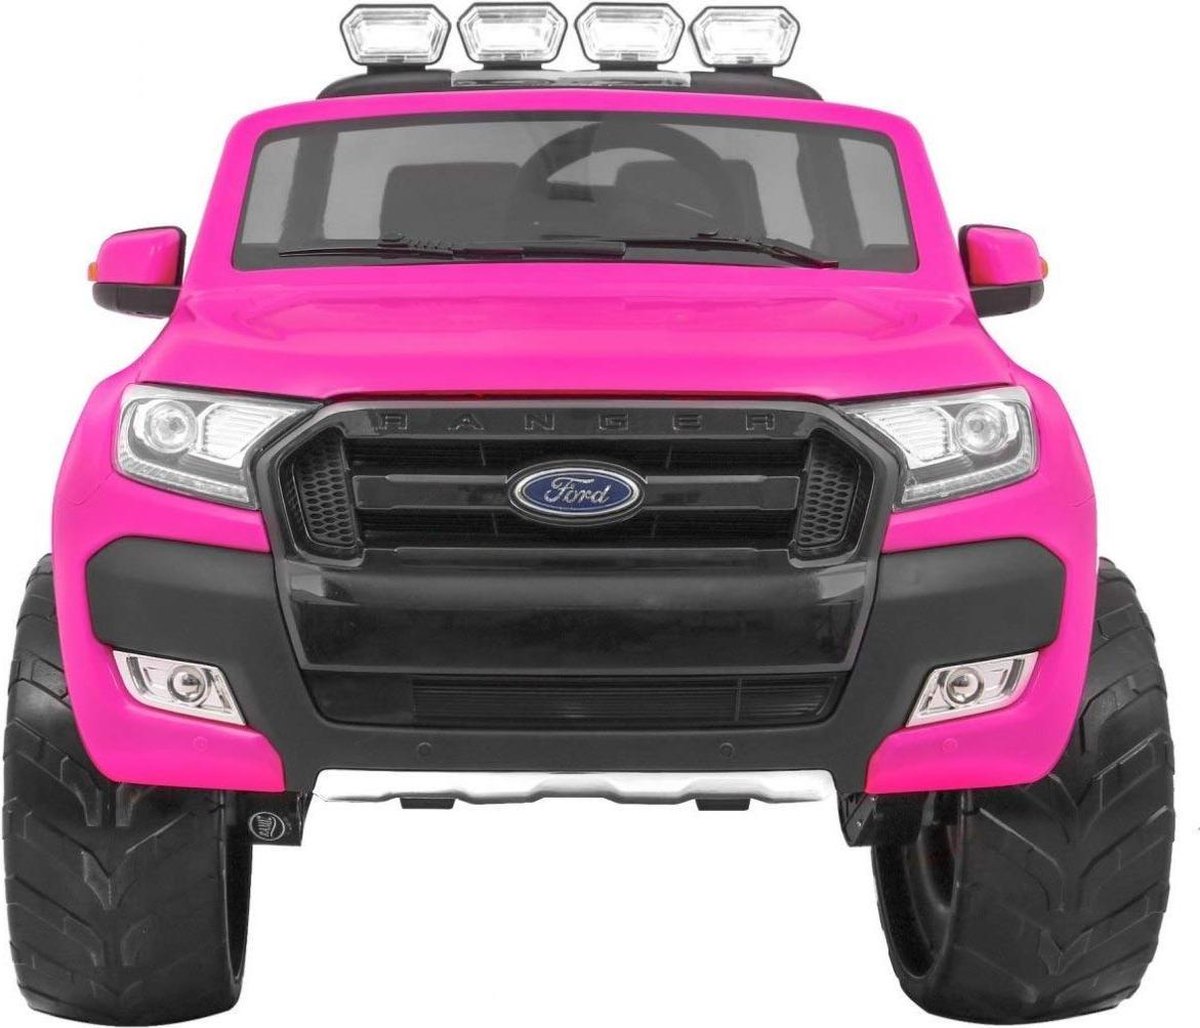 Ford - Voiture électrique enfant Ford Mustang rose